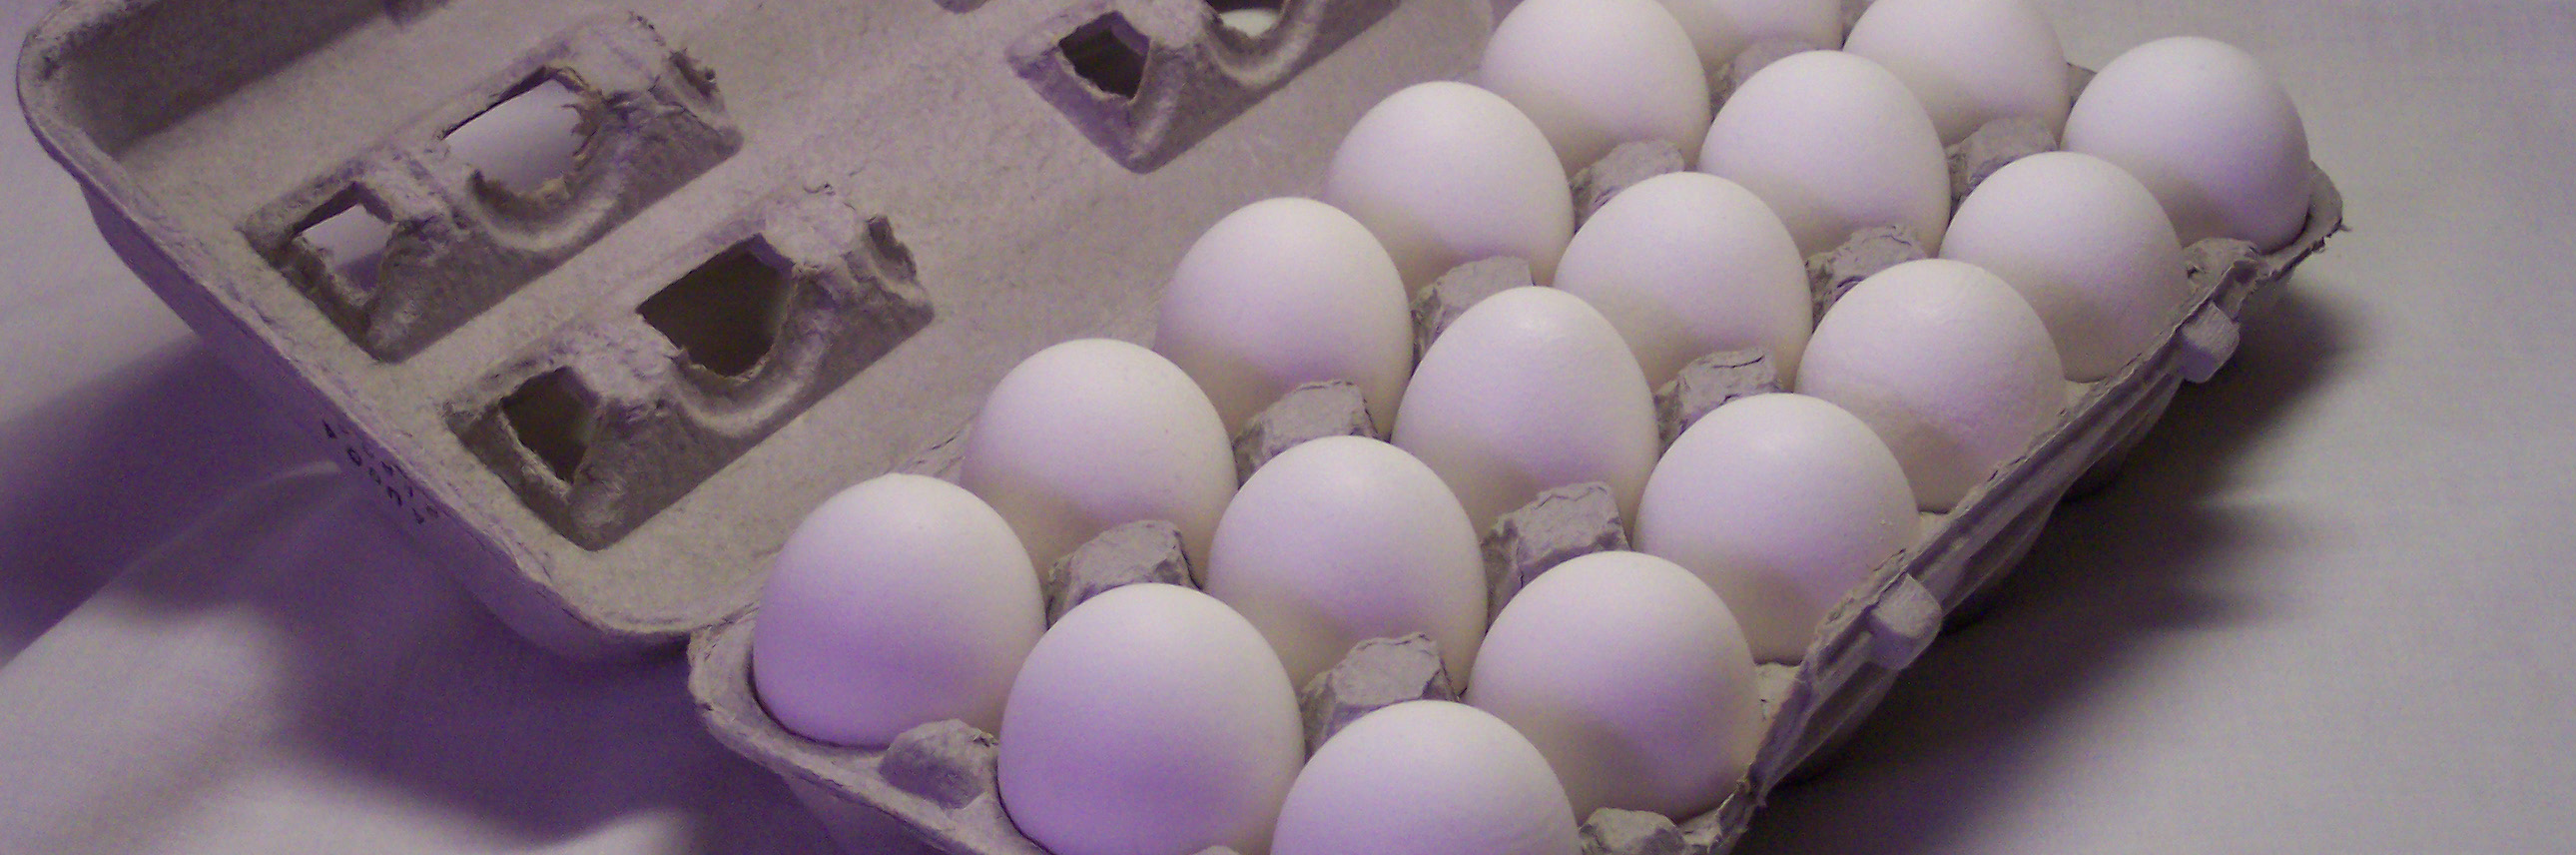 صادرات ۷۰ هزار تن تخم مرغ در سال ۹۳